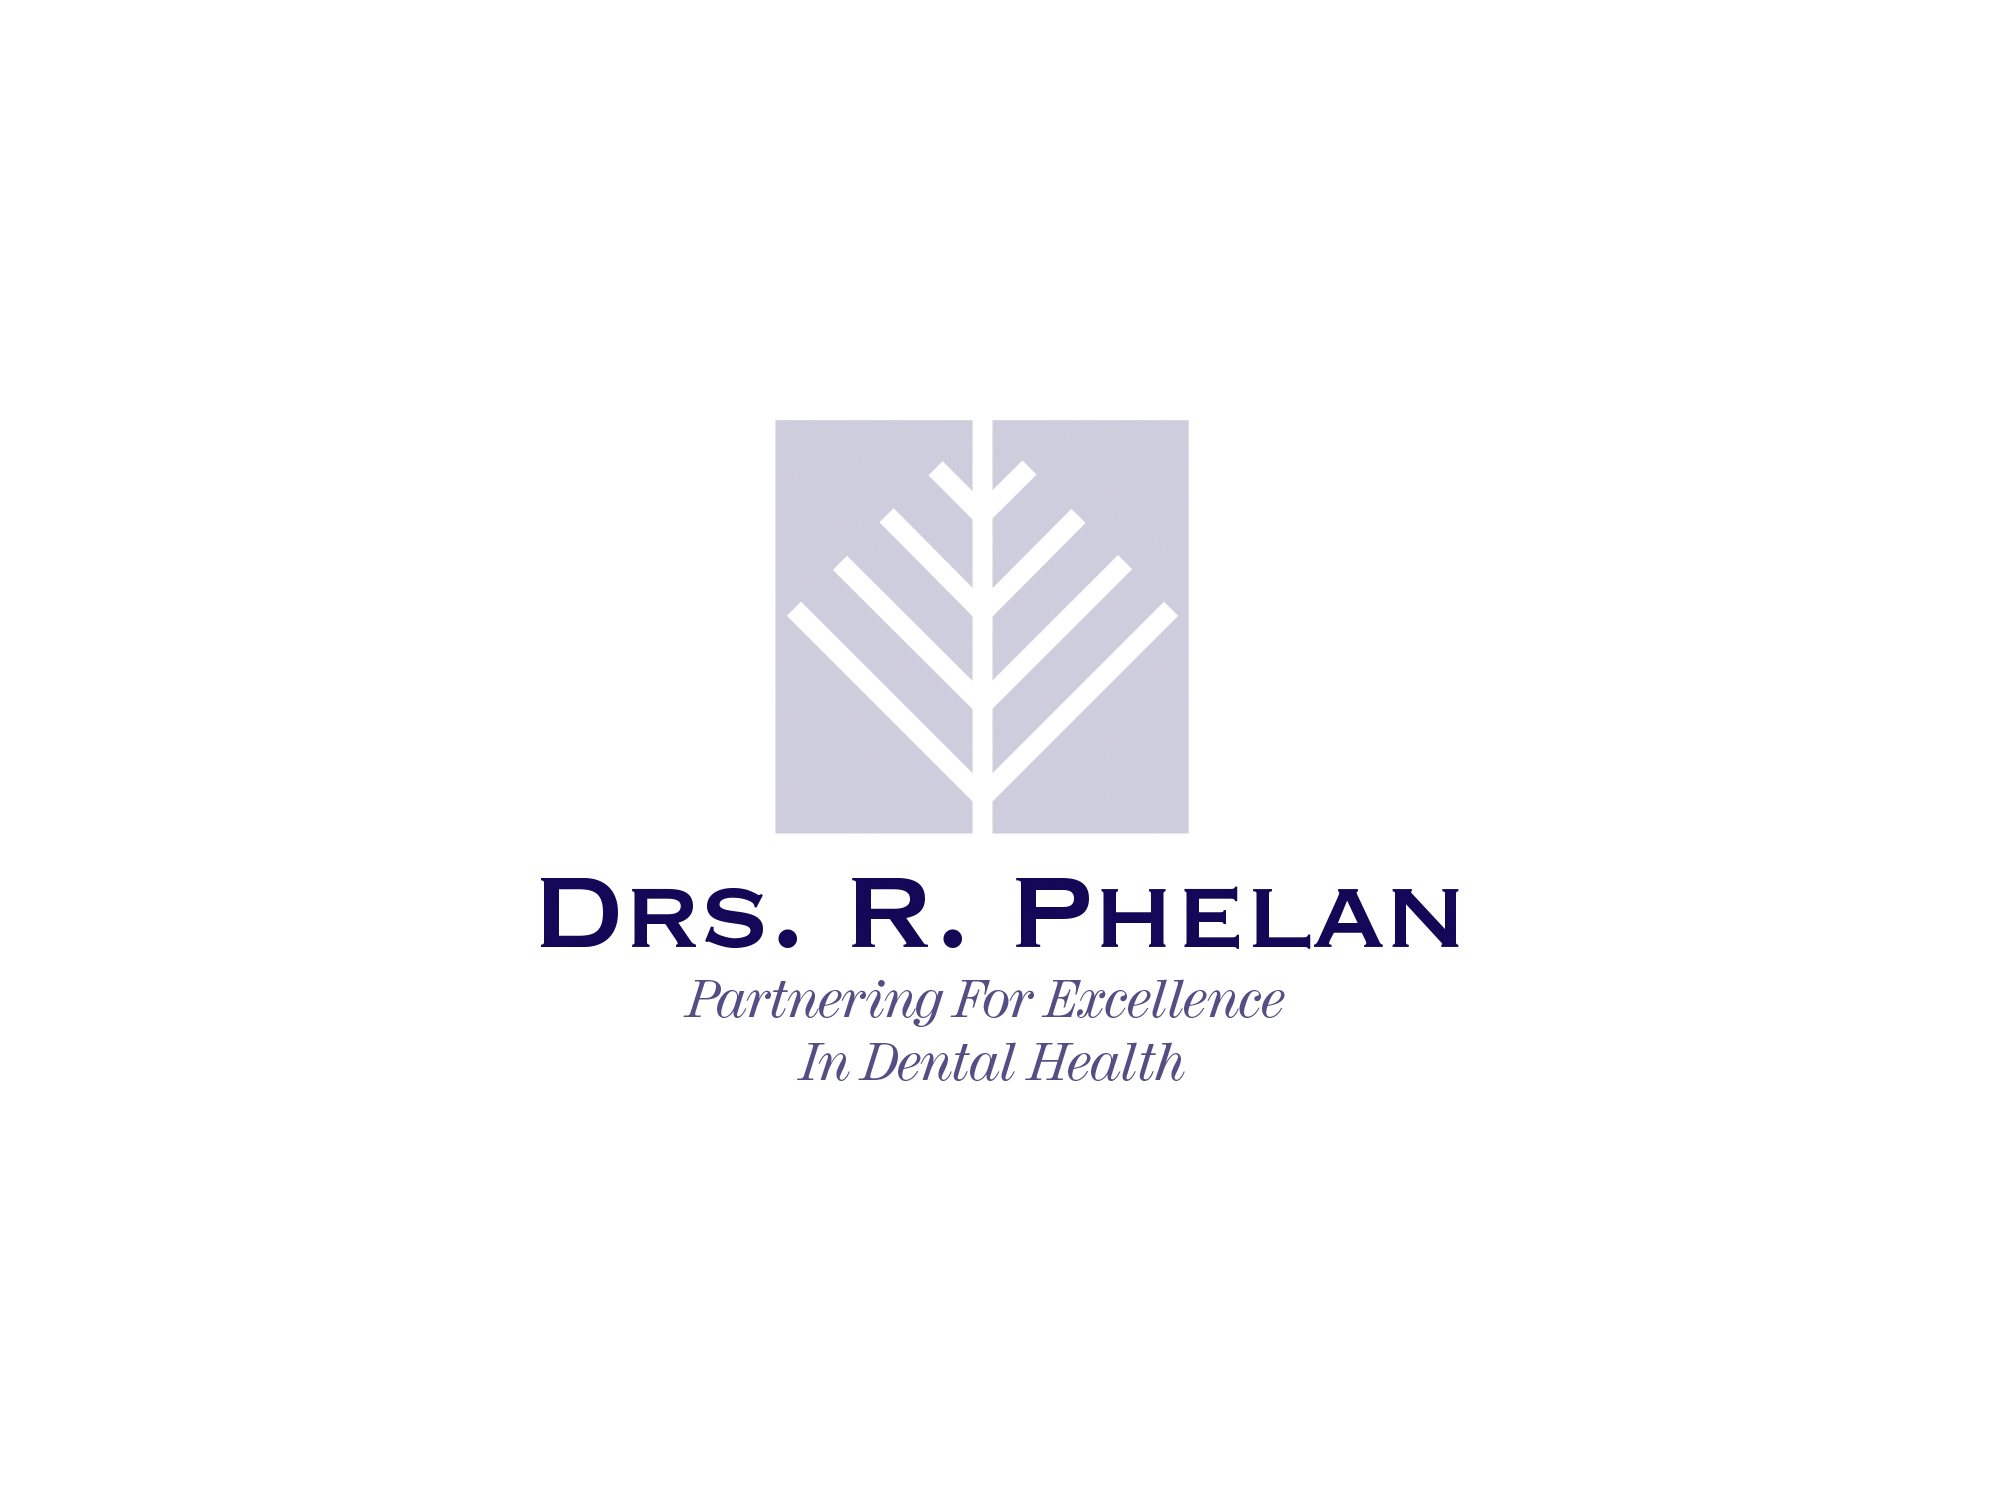 Drs. R. Phelan, DDS, 2012.